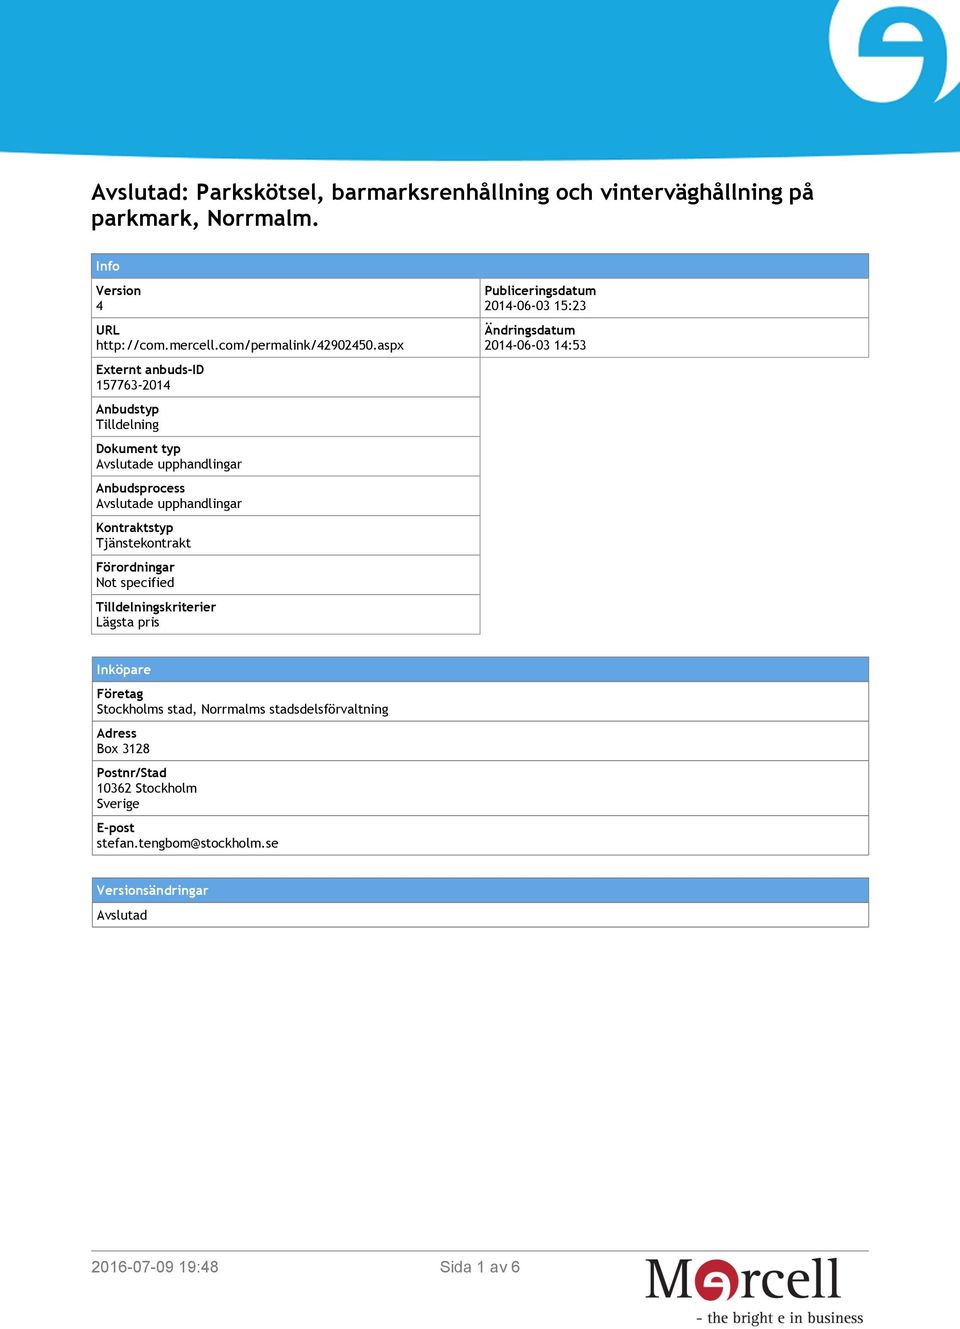 Tjänstekontrakt Förordningar Not specified Tilldelningskriterier Lägsta pris Publiceringsdatum 2014-06-03 15:23 Ändringsdatum 2014-06-03 14:53 Inköpare